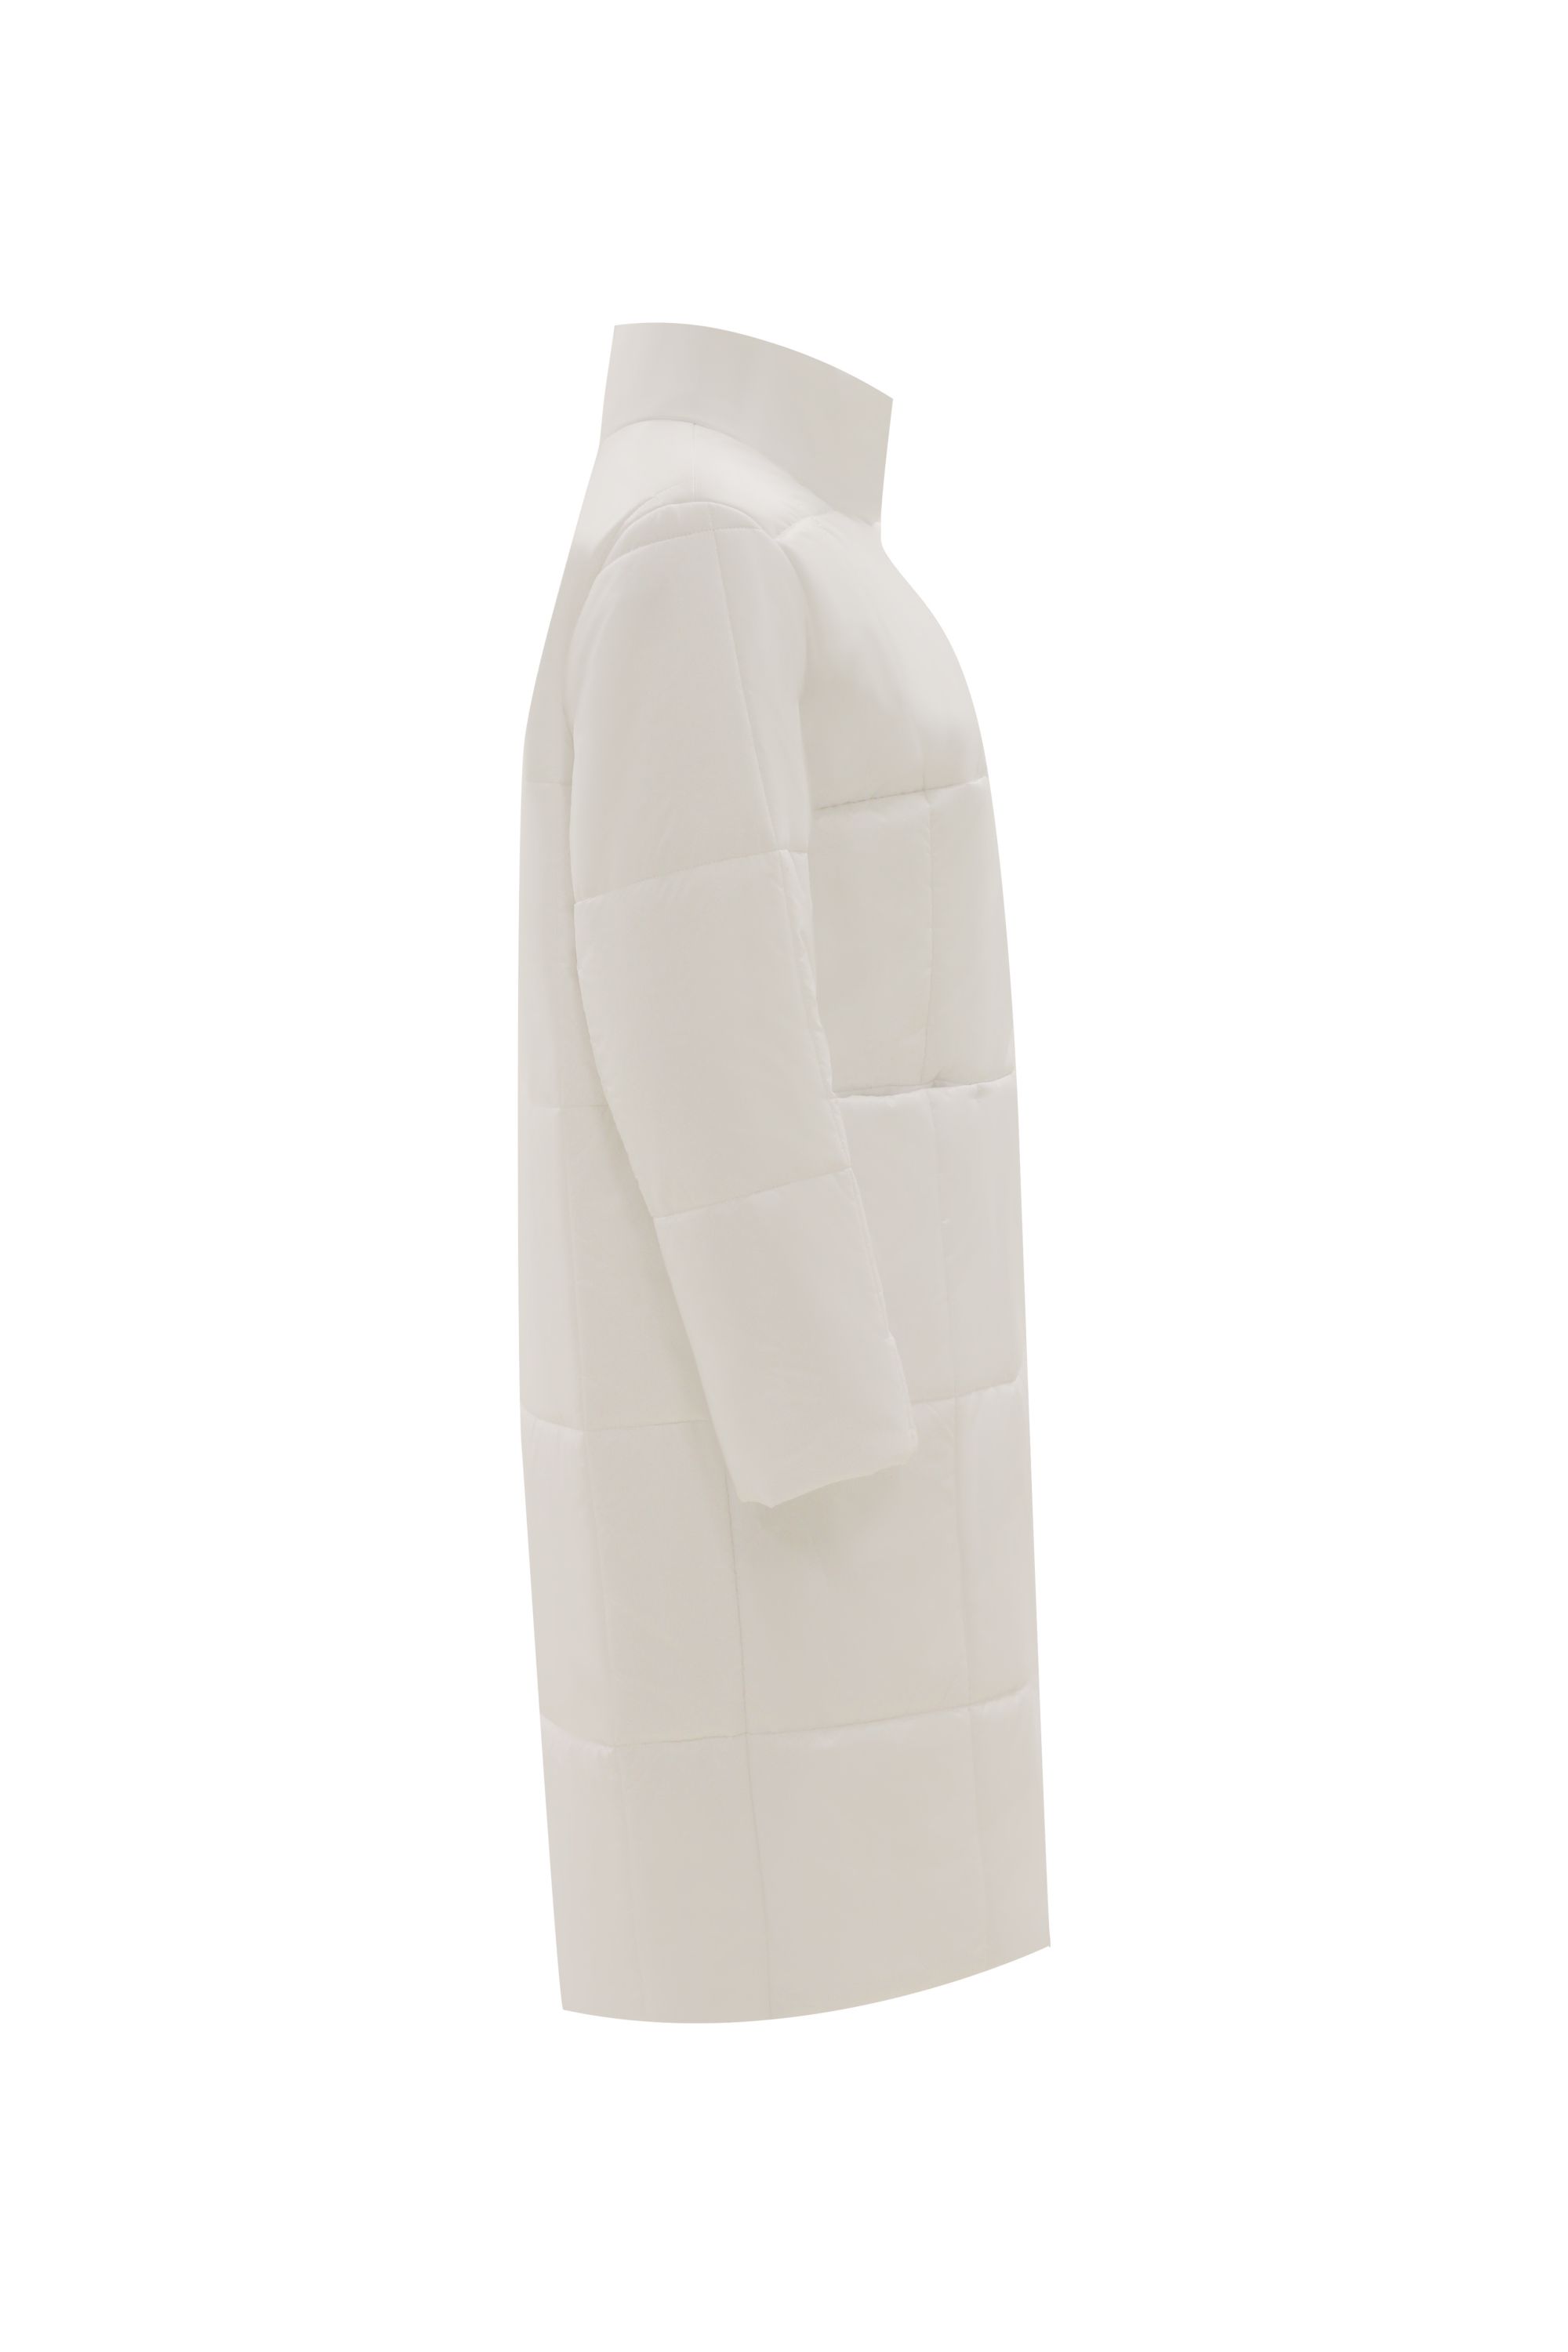 Пальто женское плащевое утепленное 5-12339-1. Фото 2.